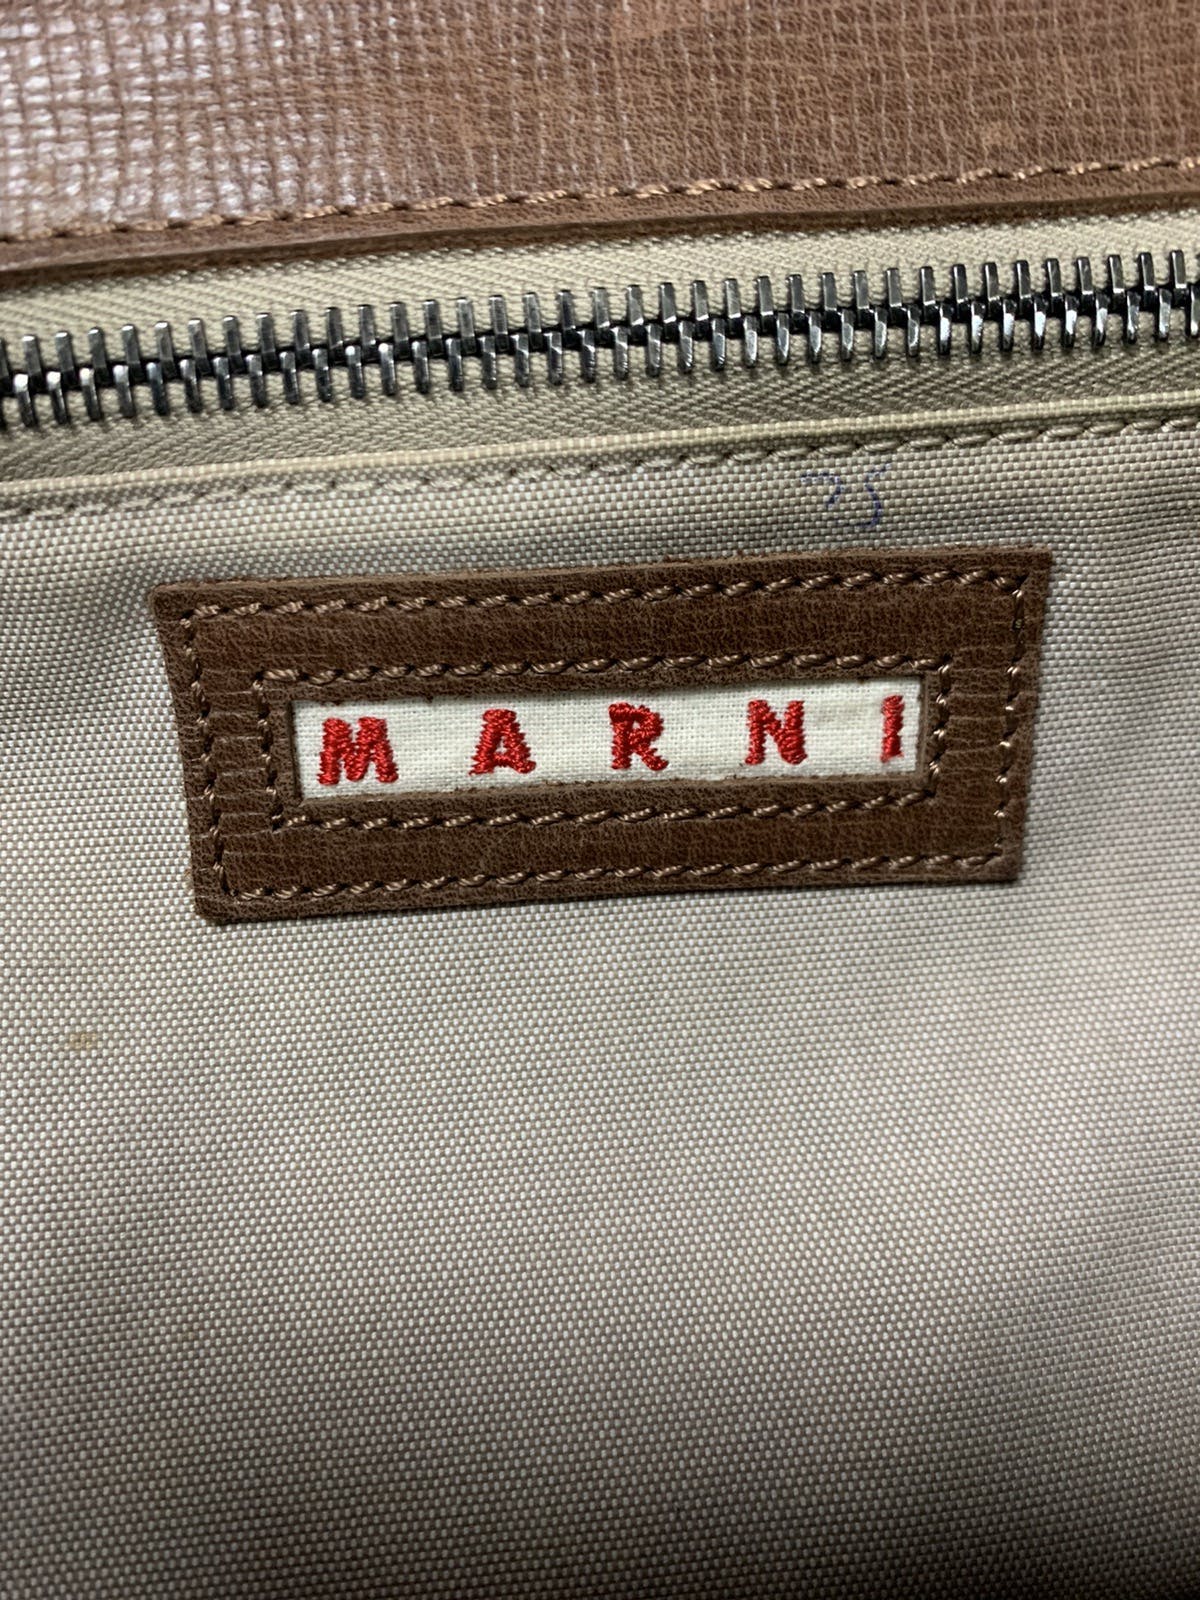 Marni leather handbag - 12